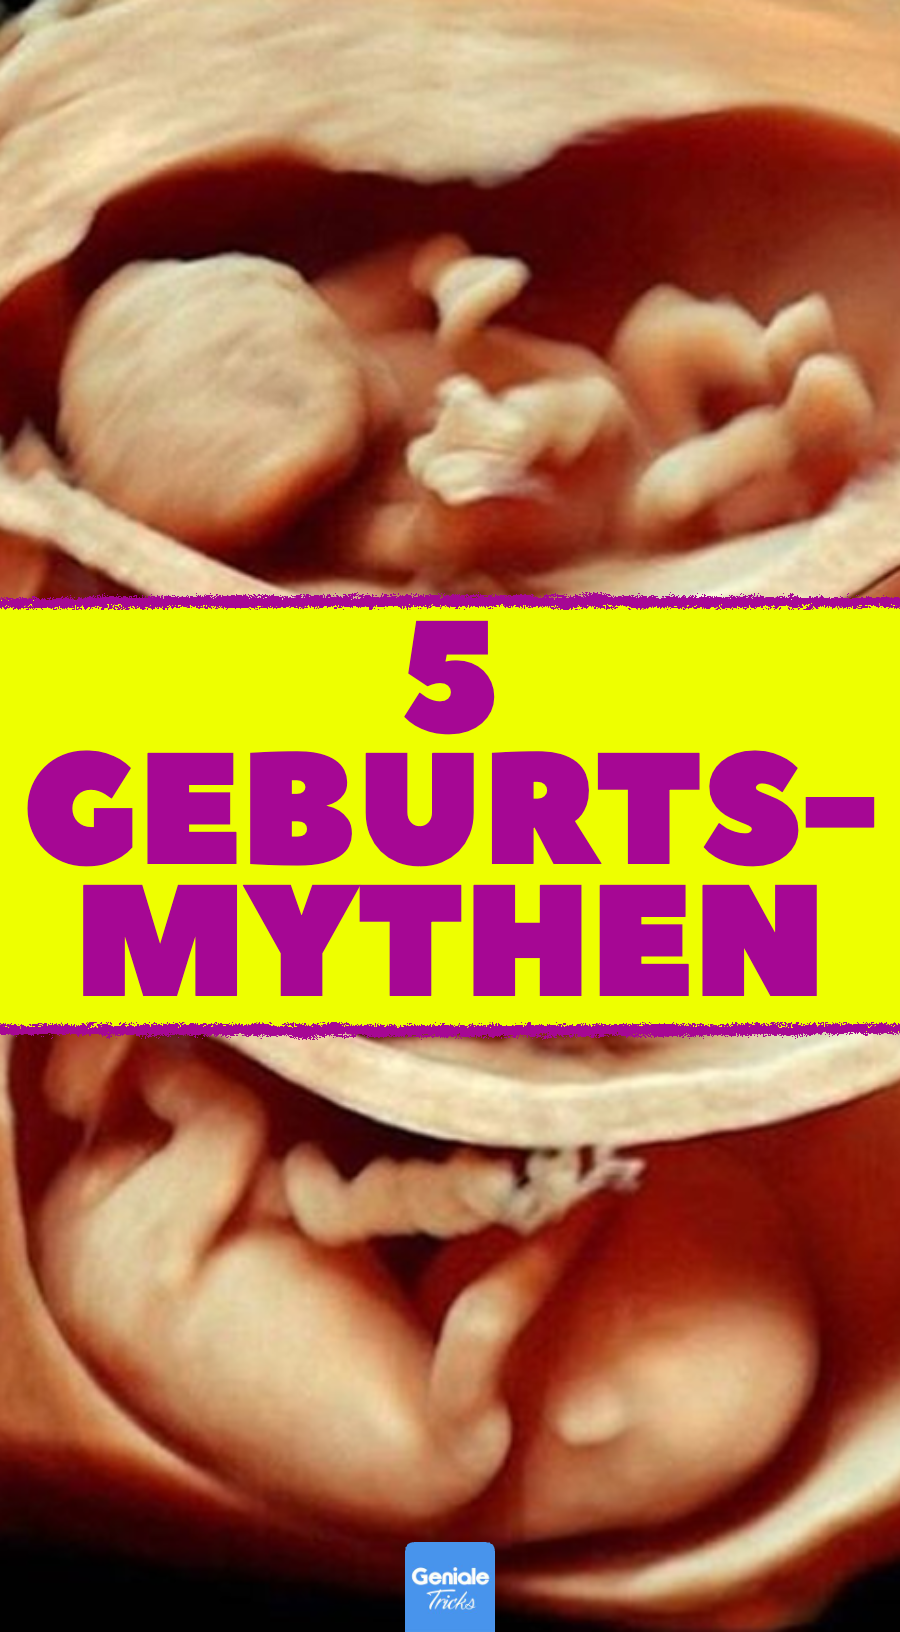 Geburt: 5 Mythen, die nicht (ganz) stimmen